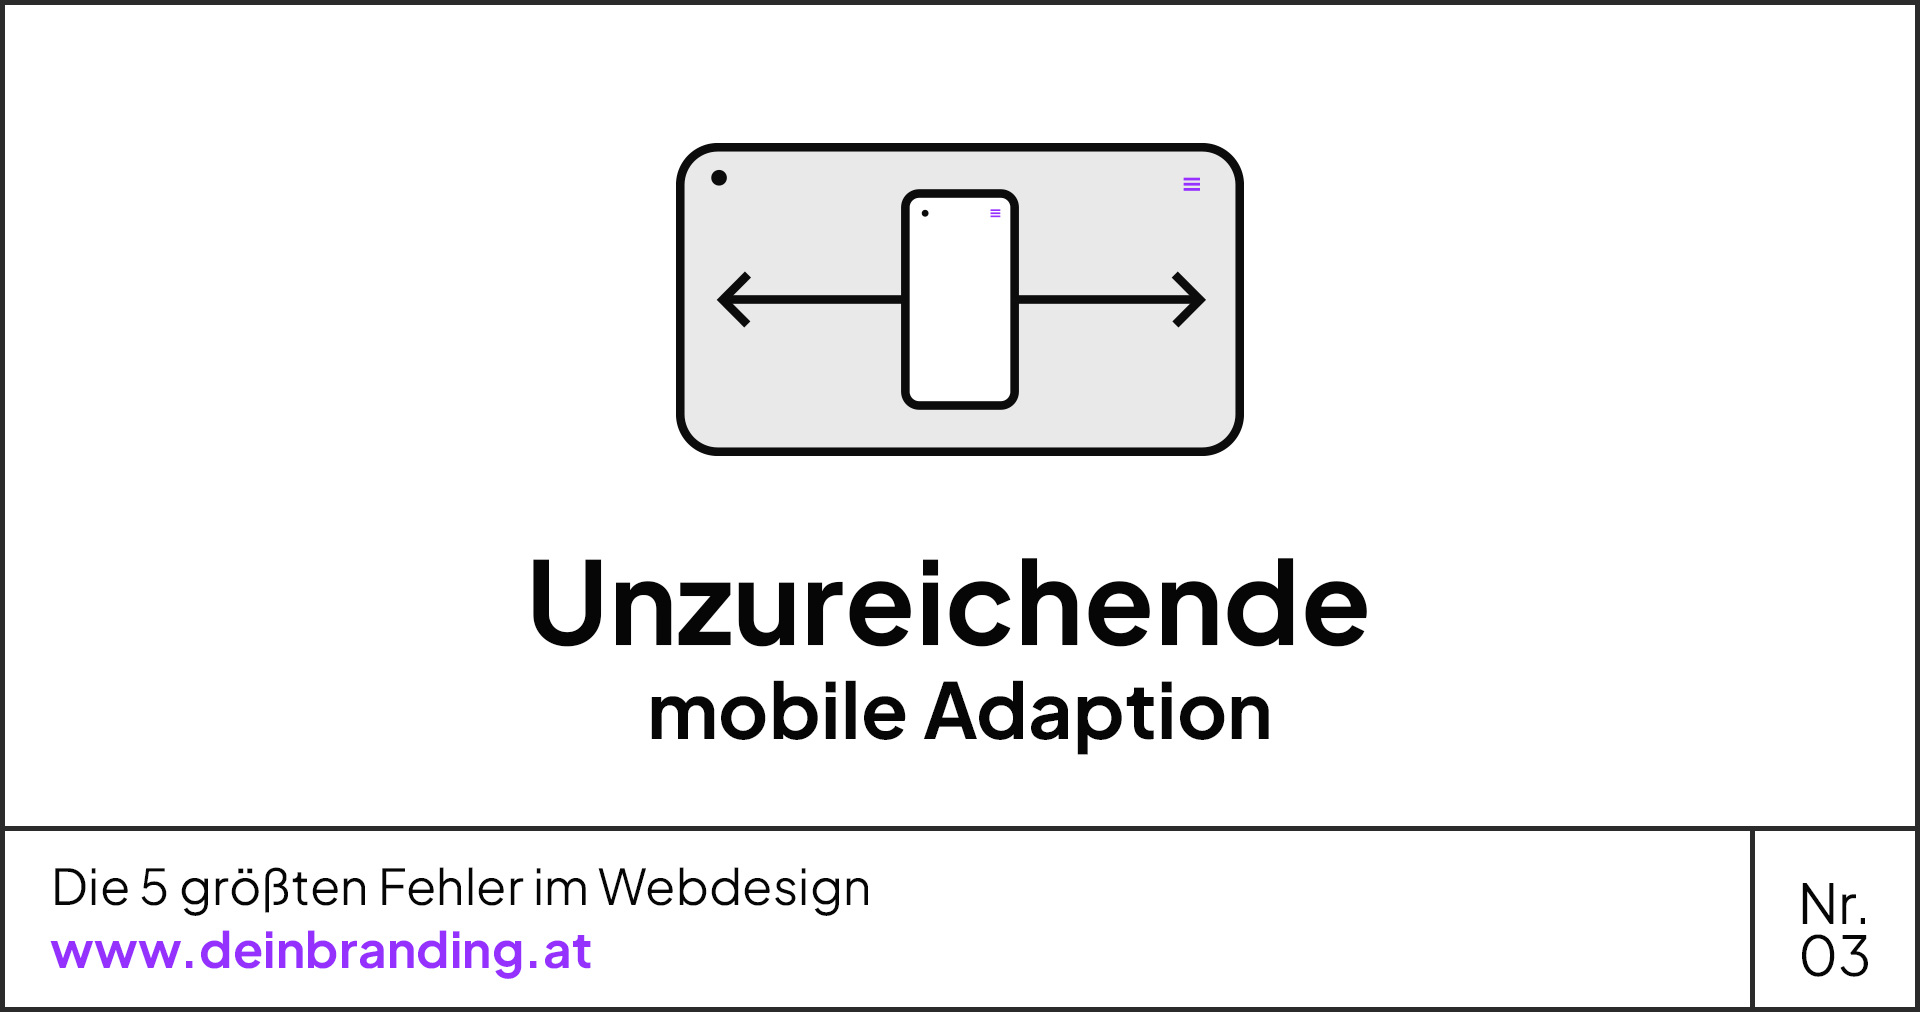 Ein Bild eines mobilen Geräts mit den Worten unzureichende mobile Adaption und Die 5 größten Fehler im Webdesign.